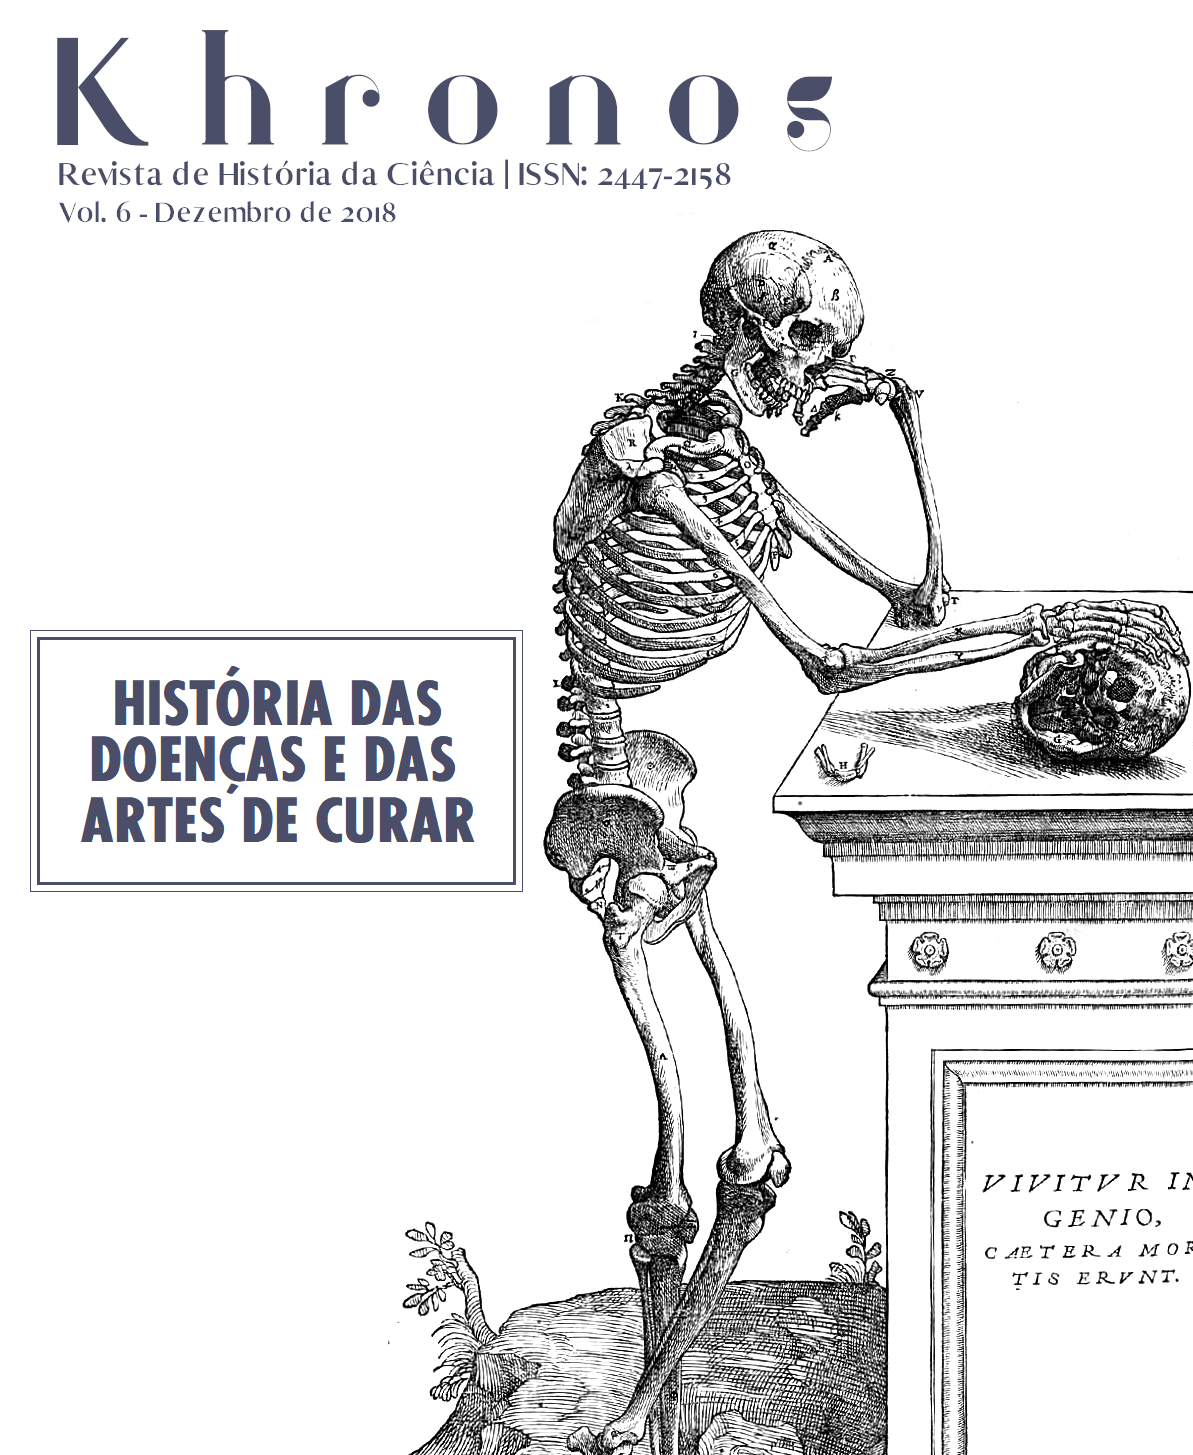 Khronos nº 6 - História das doenças e das artes de curar